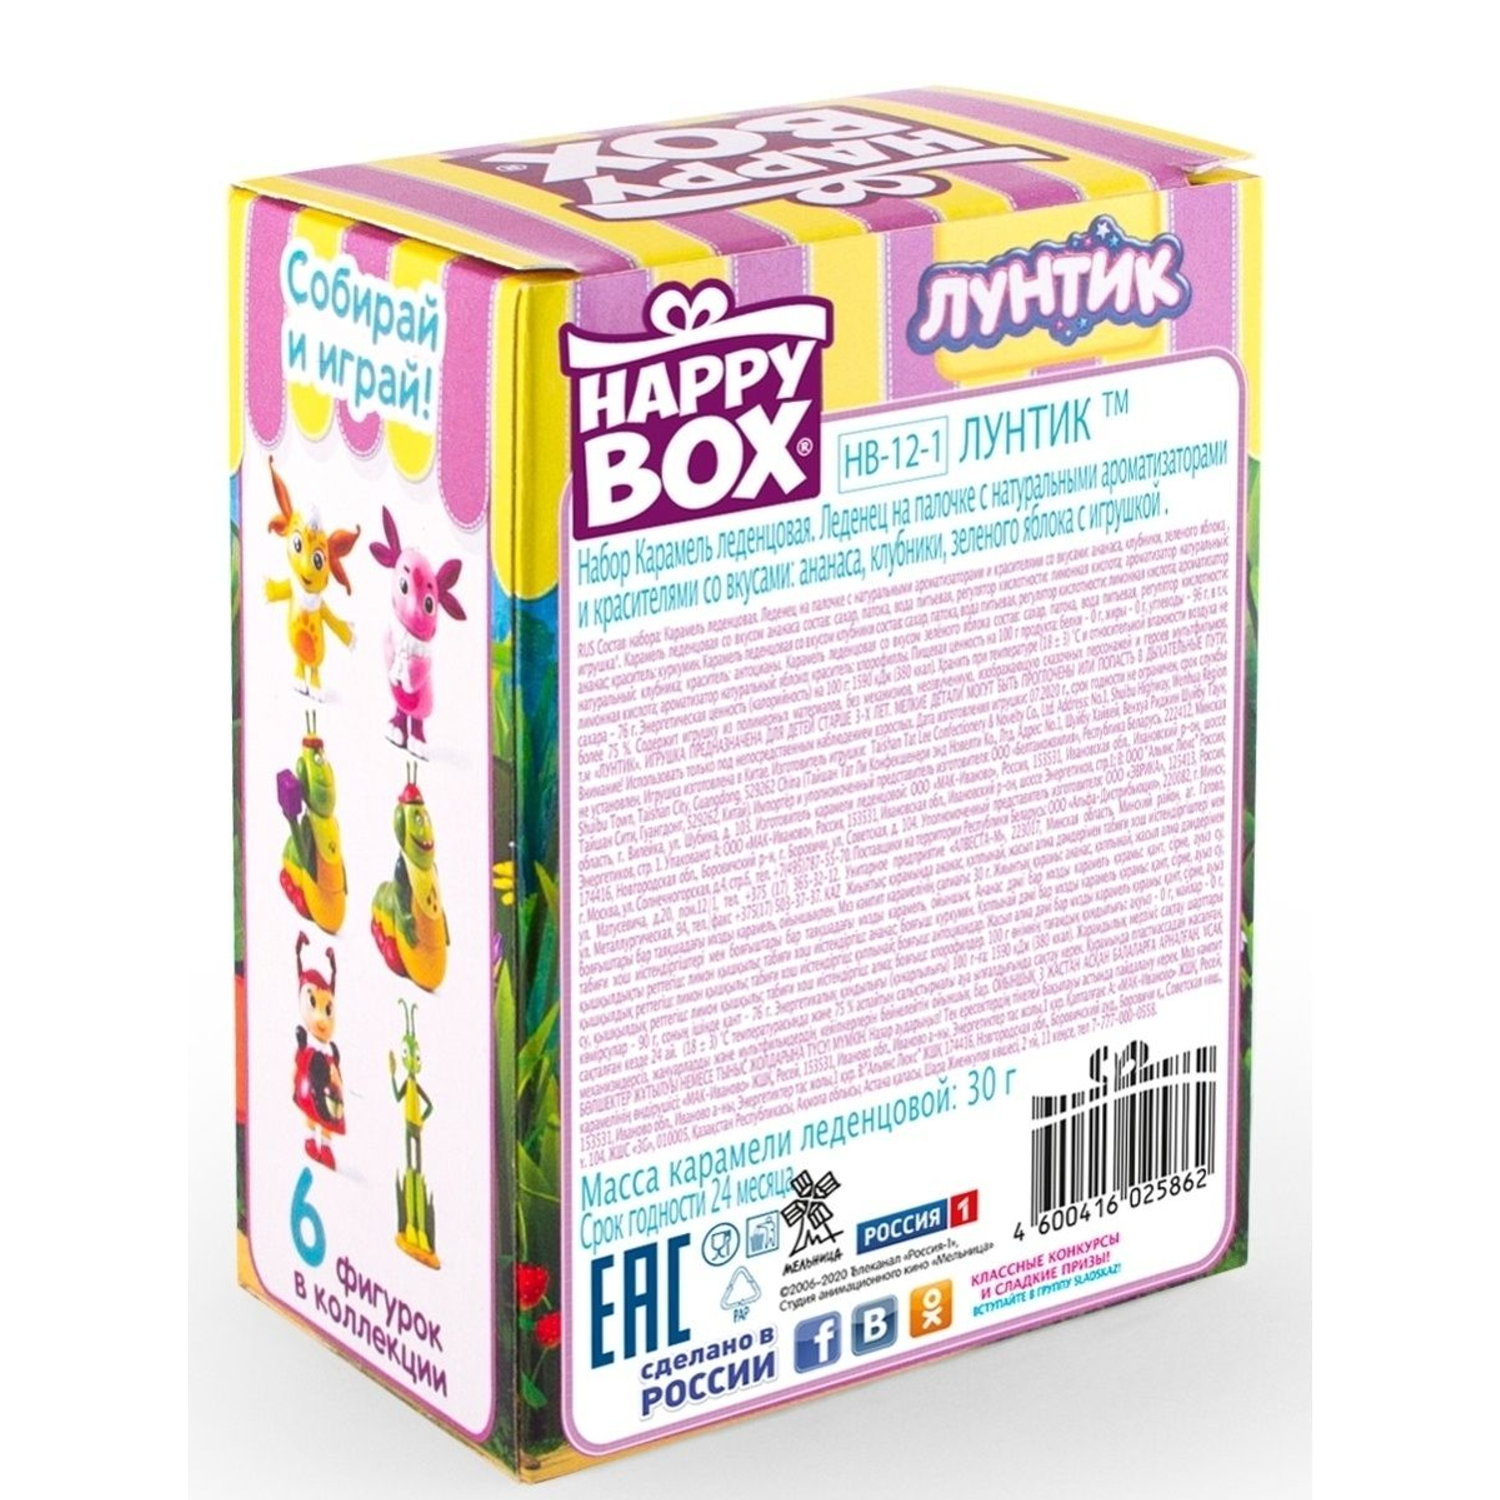 Леденцы с игрушкой Сладкая сказка Happy box Лунтик 30г - фото 8